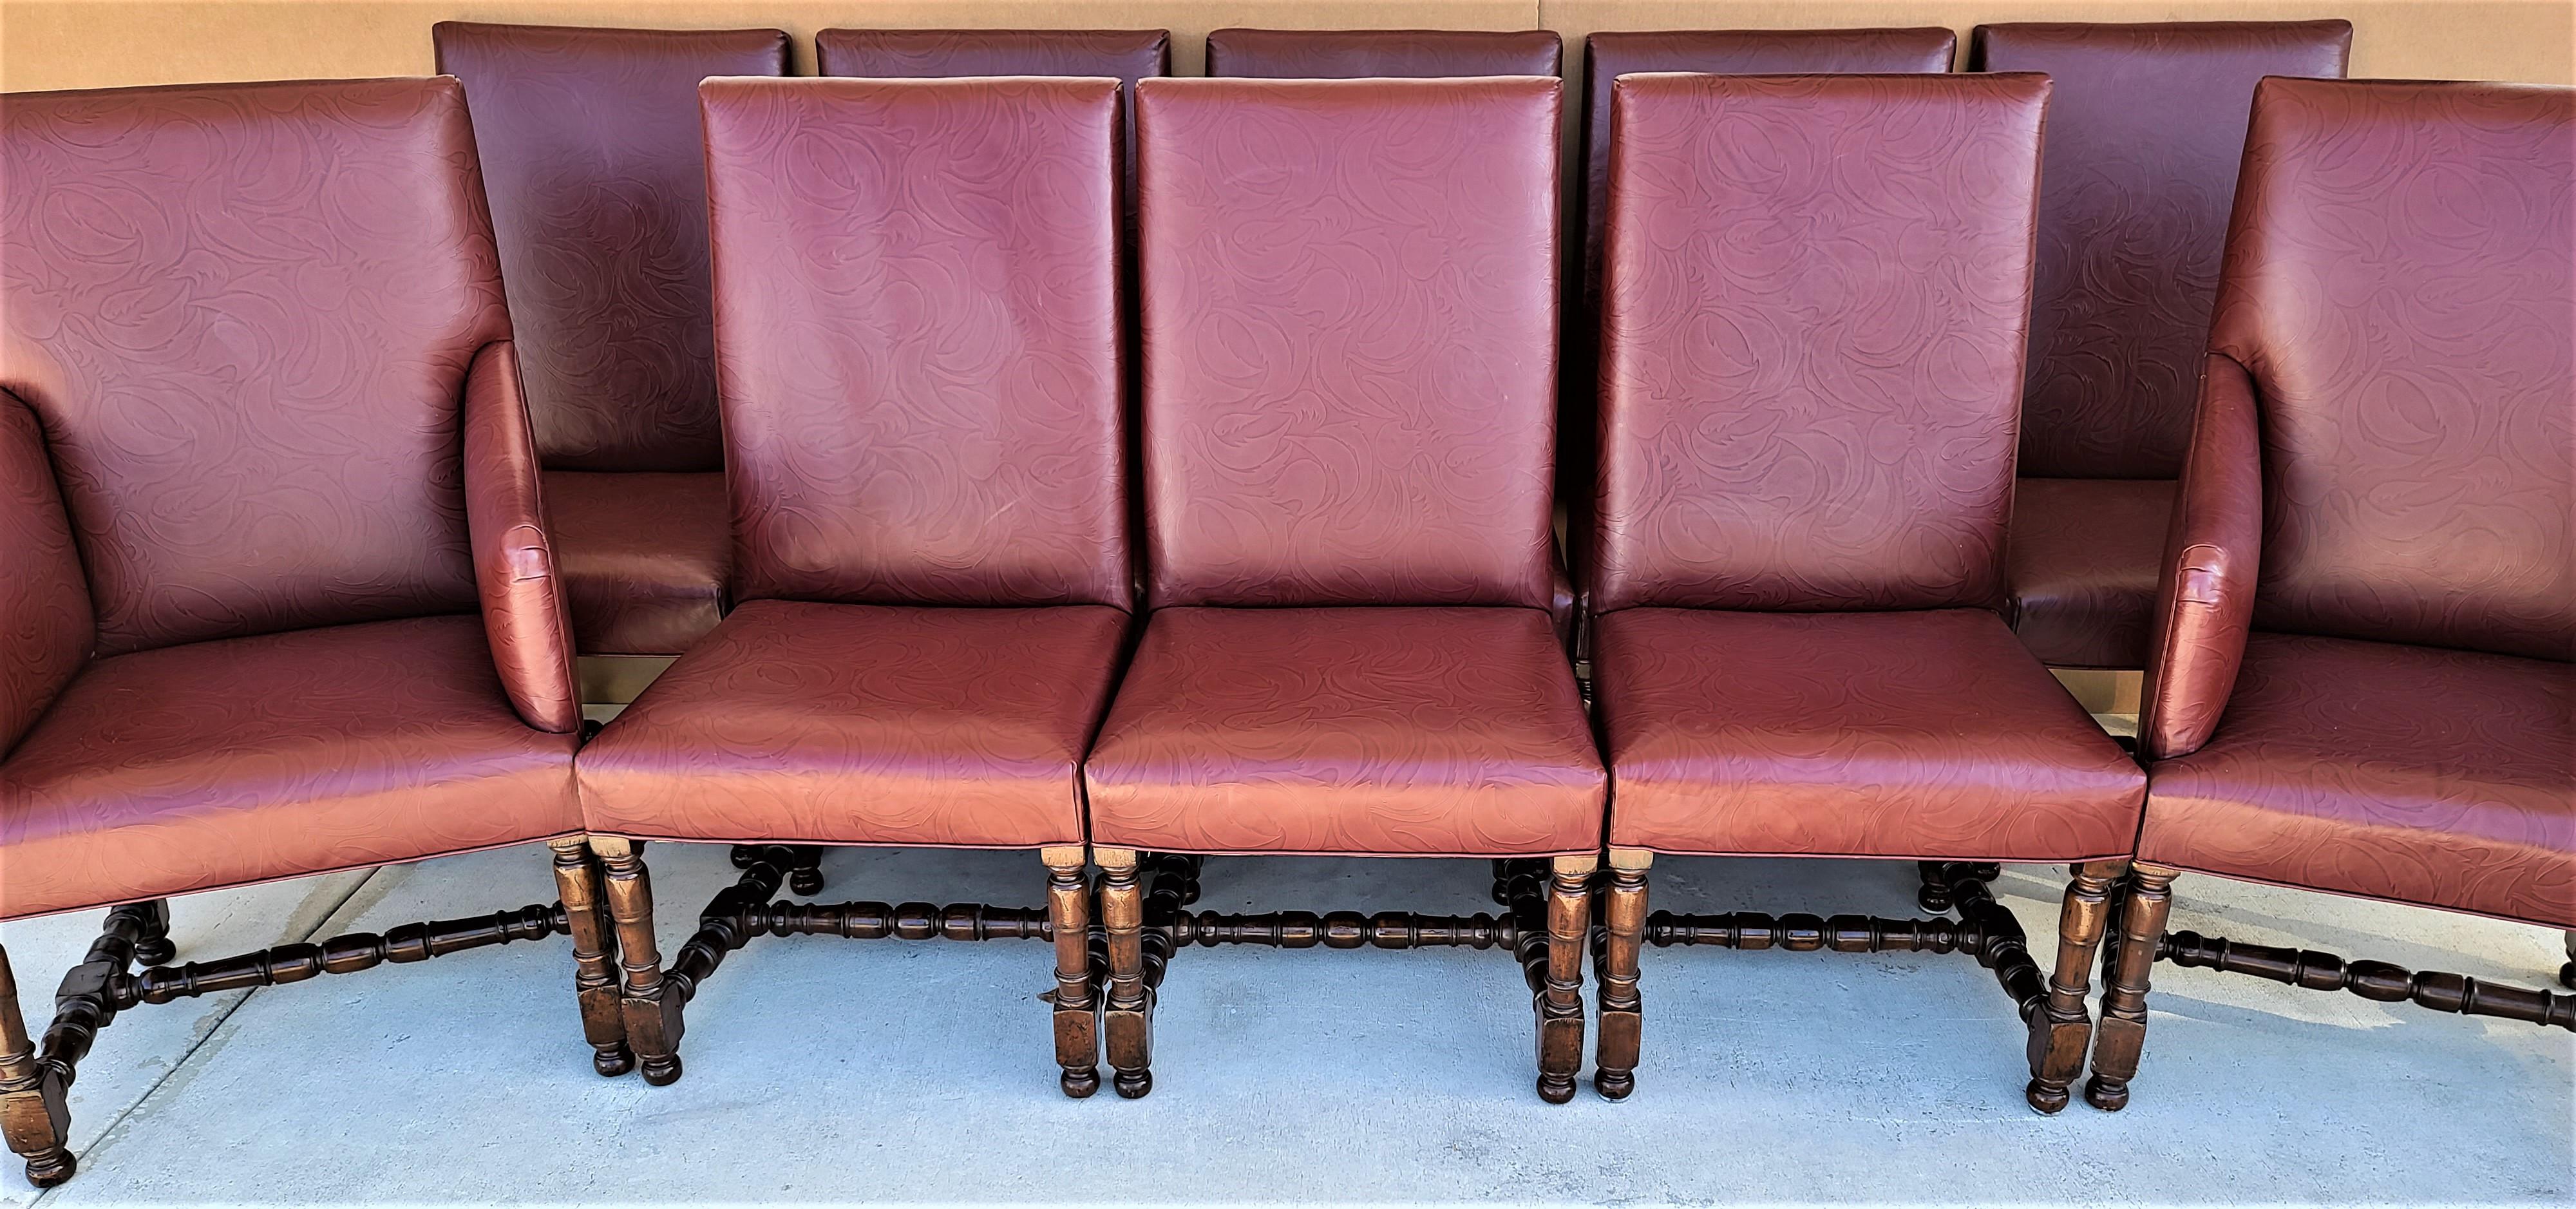 Nous vous proposons l'une de nos récentes acquisitions de meubles fins Palm Beach Estate d'un
Lot de 10 chaises de salle à manger Louis XIII en cuir à feuilles d'acanthe Rose Tarlow melrose house
Le cuir véritable est orné d'un motif texturé de